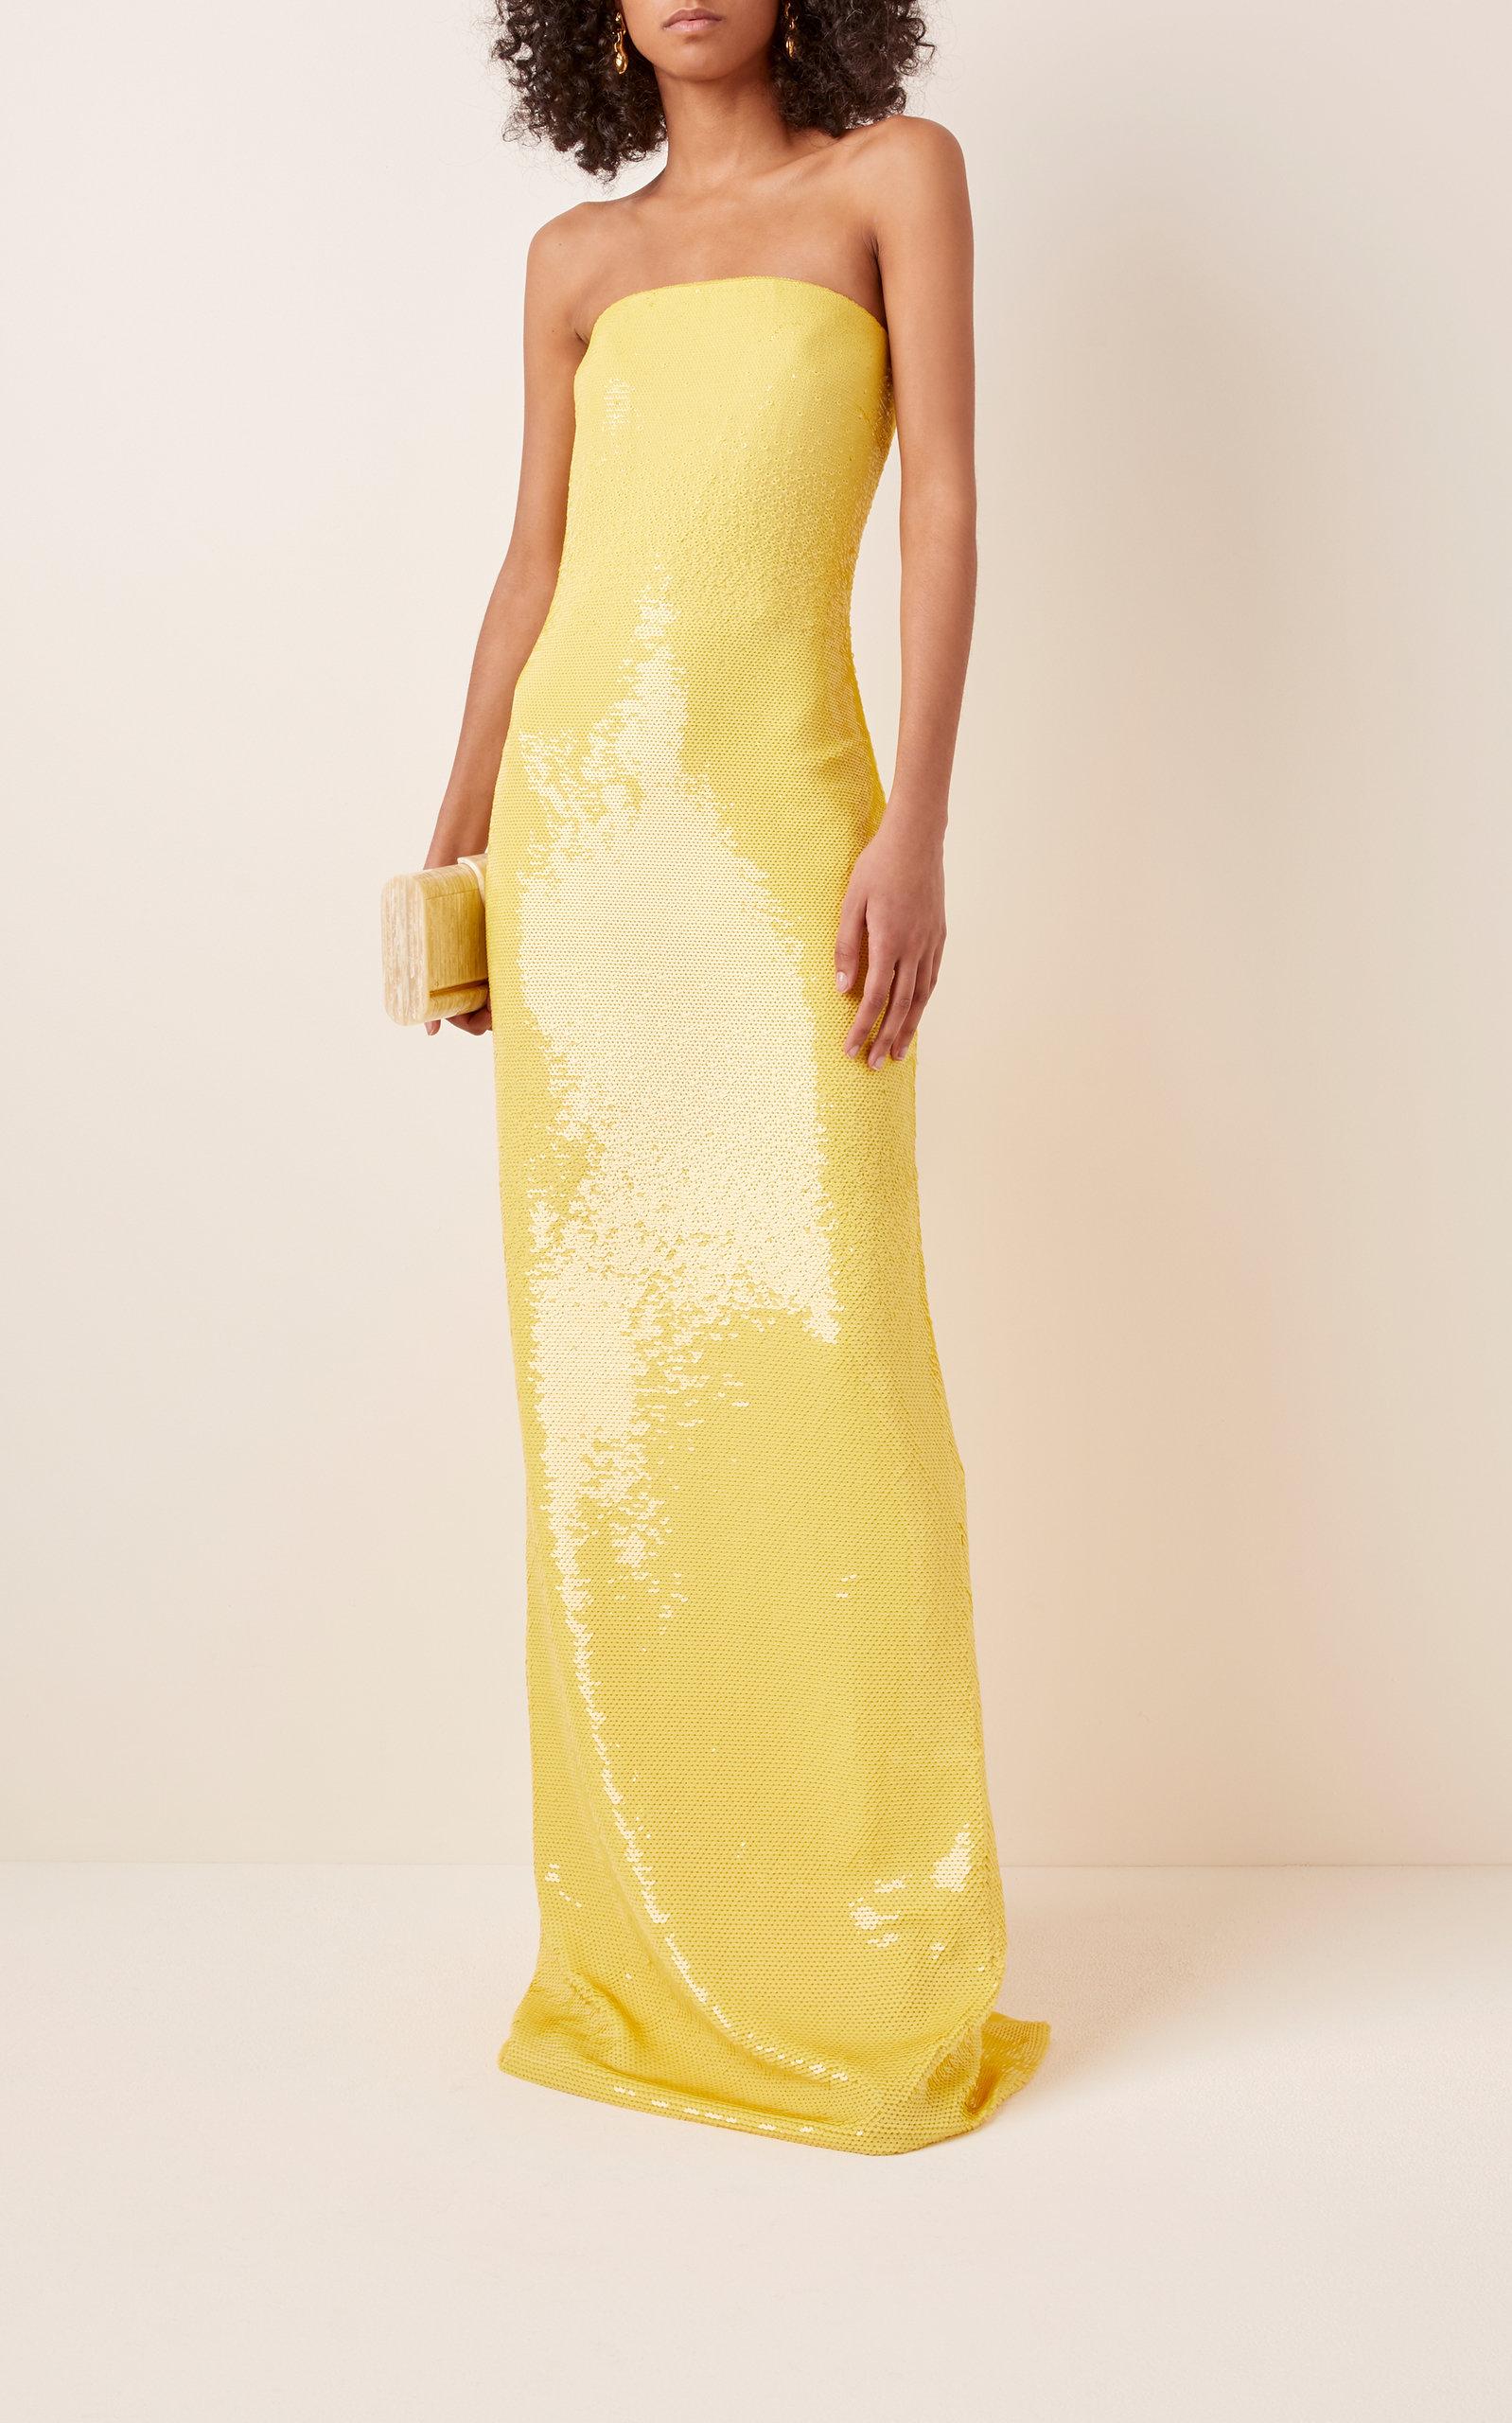 Ralph Lauren Landis Sequined Tulle Dress in Yellow - Lyst